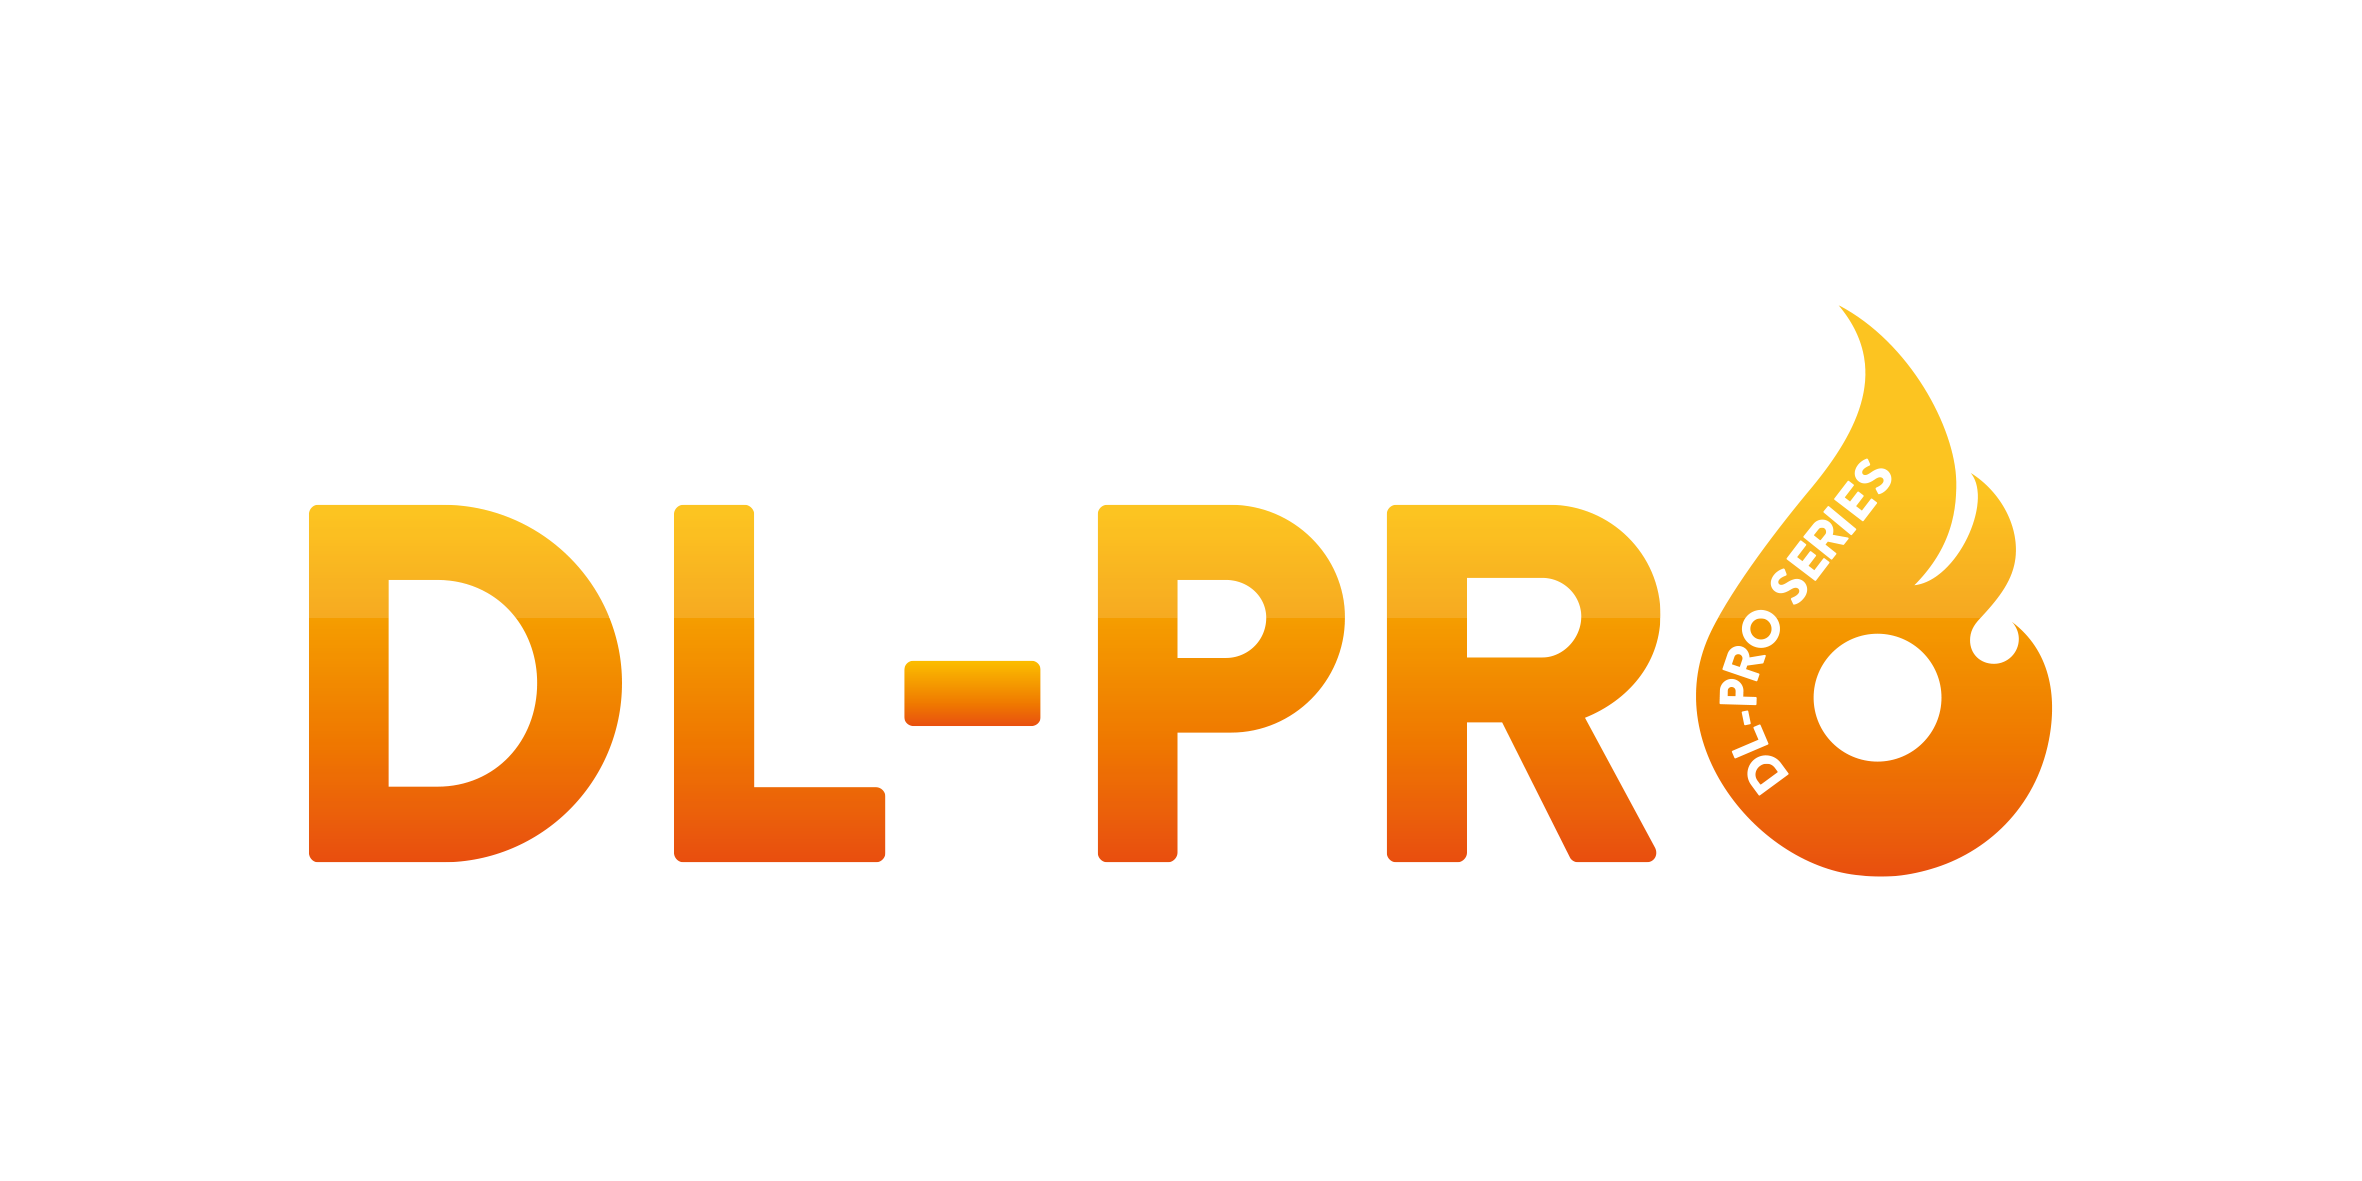 Fire-Pro Ltd